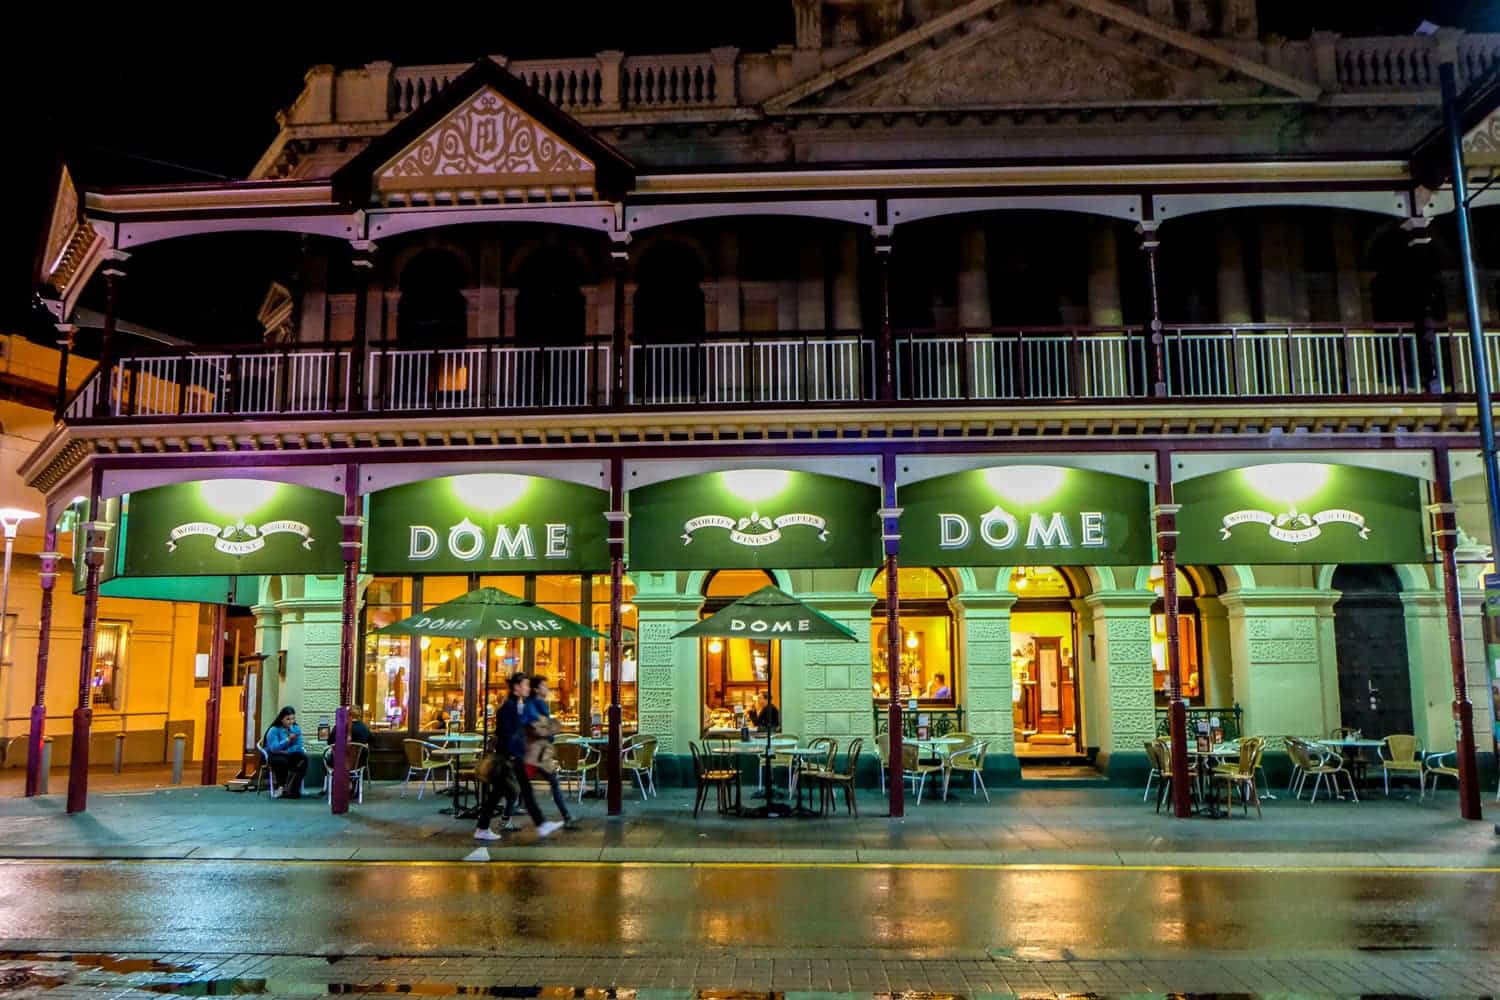 La señalización verde de la cafetería Dome en Freemantle, Perth en la noche